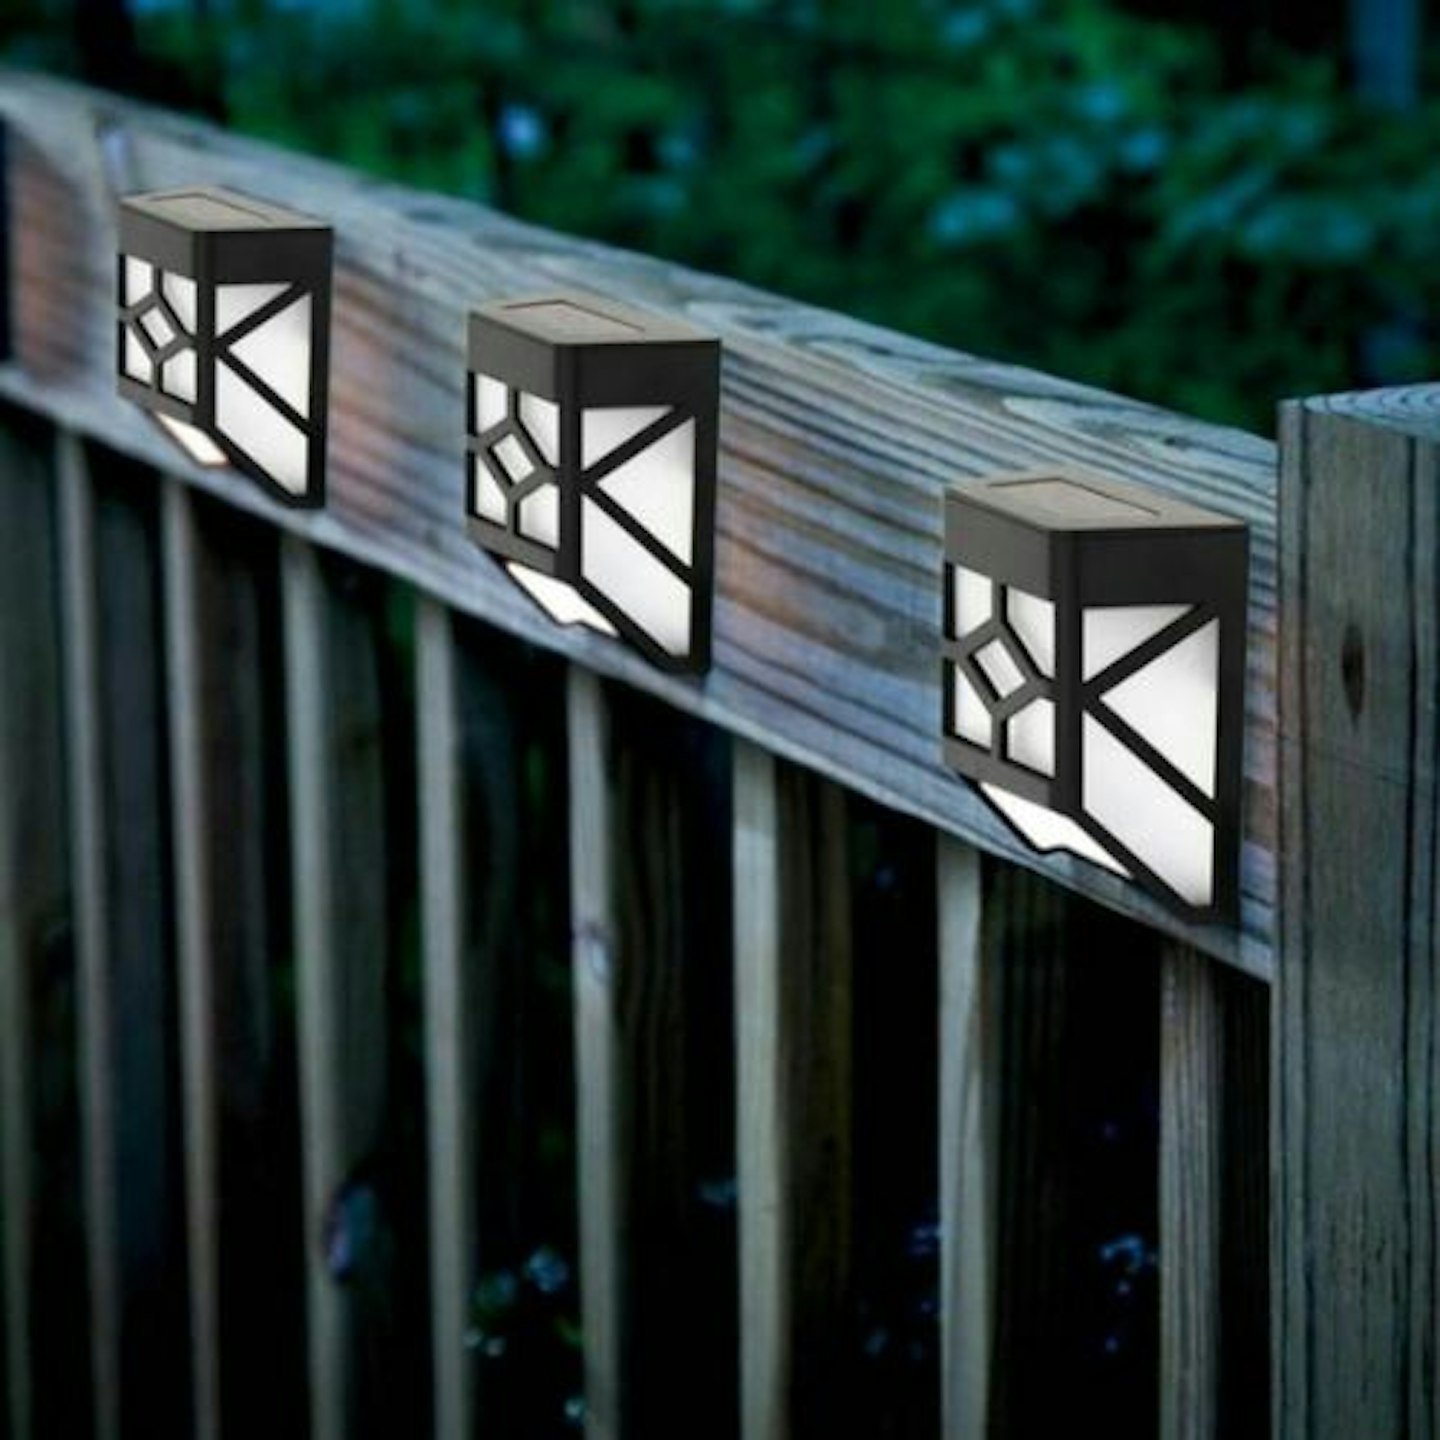 Solar-Powered LED Lights for Outside